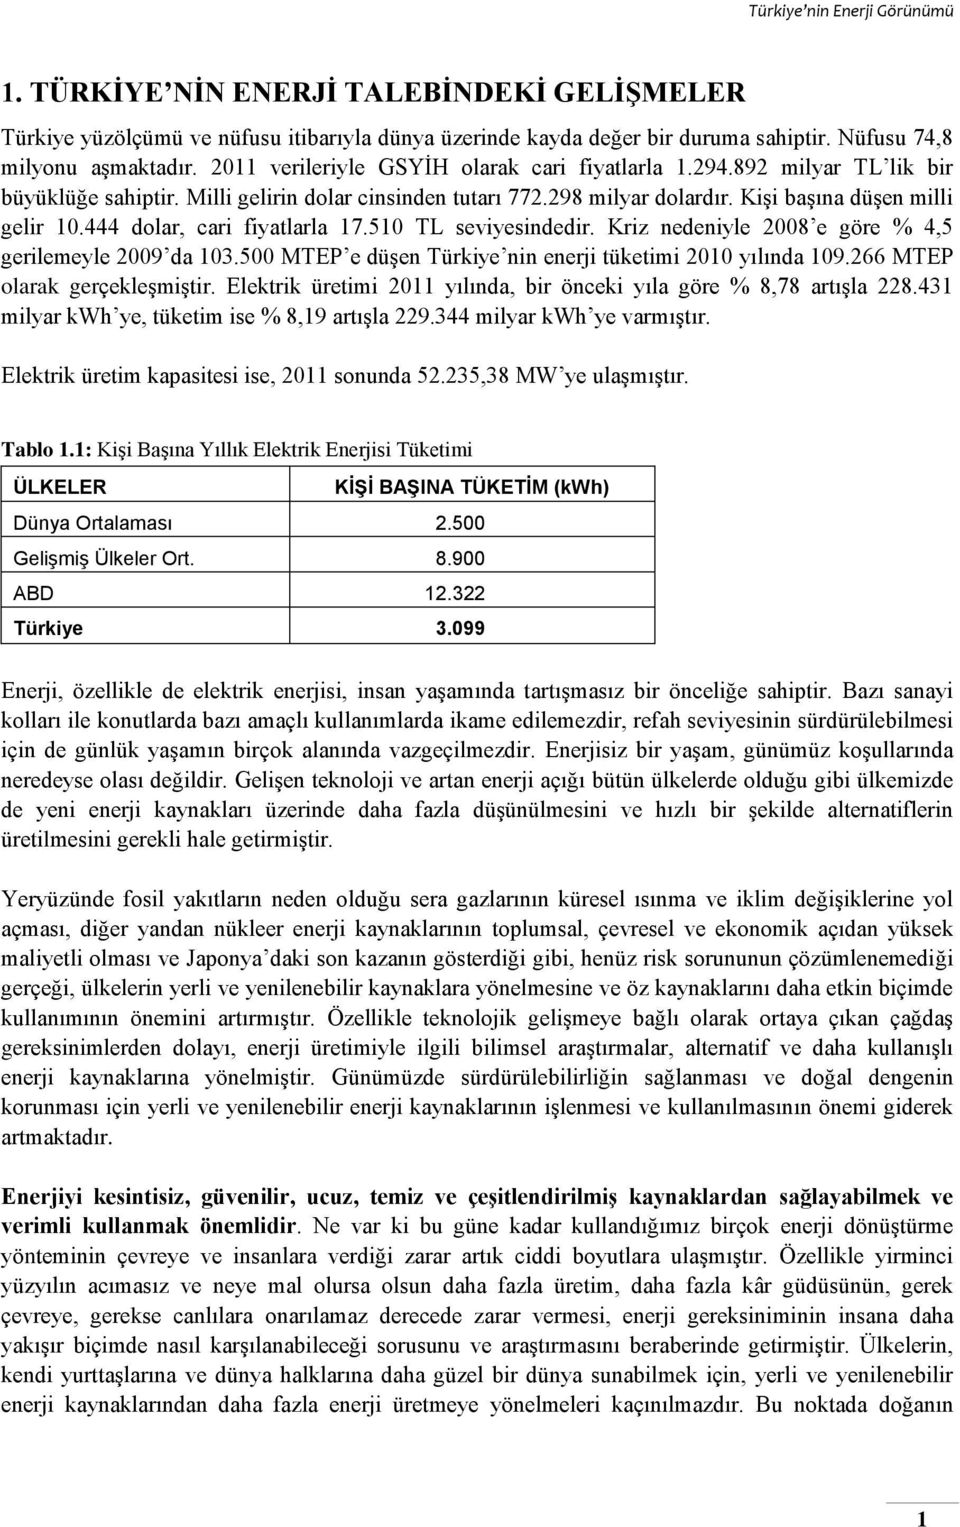 444 dolar, cari fiyatlarla 17.510 TL seviyesindedir. Kriz nedeniyle 2008 e göre % 4,5 gerilemeyle 2009 da 103.500 MTEP e düşen Türkiye nin enerji tüketimi 2010 yılında 109.